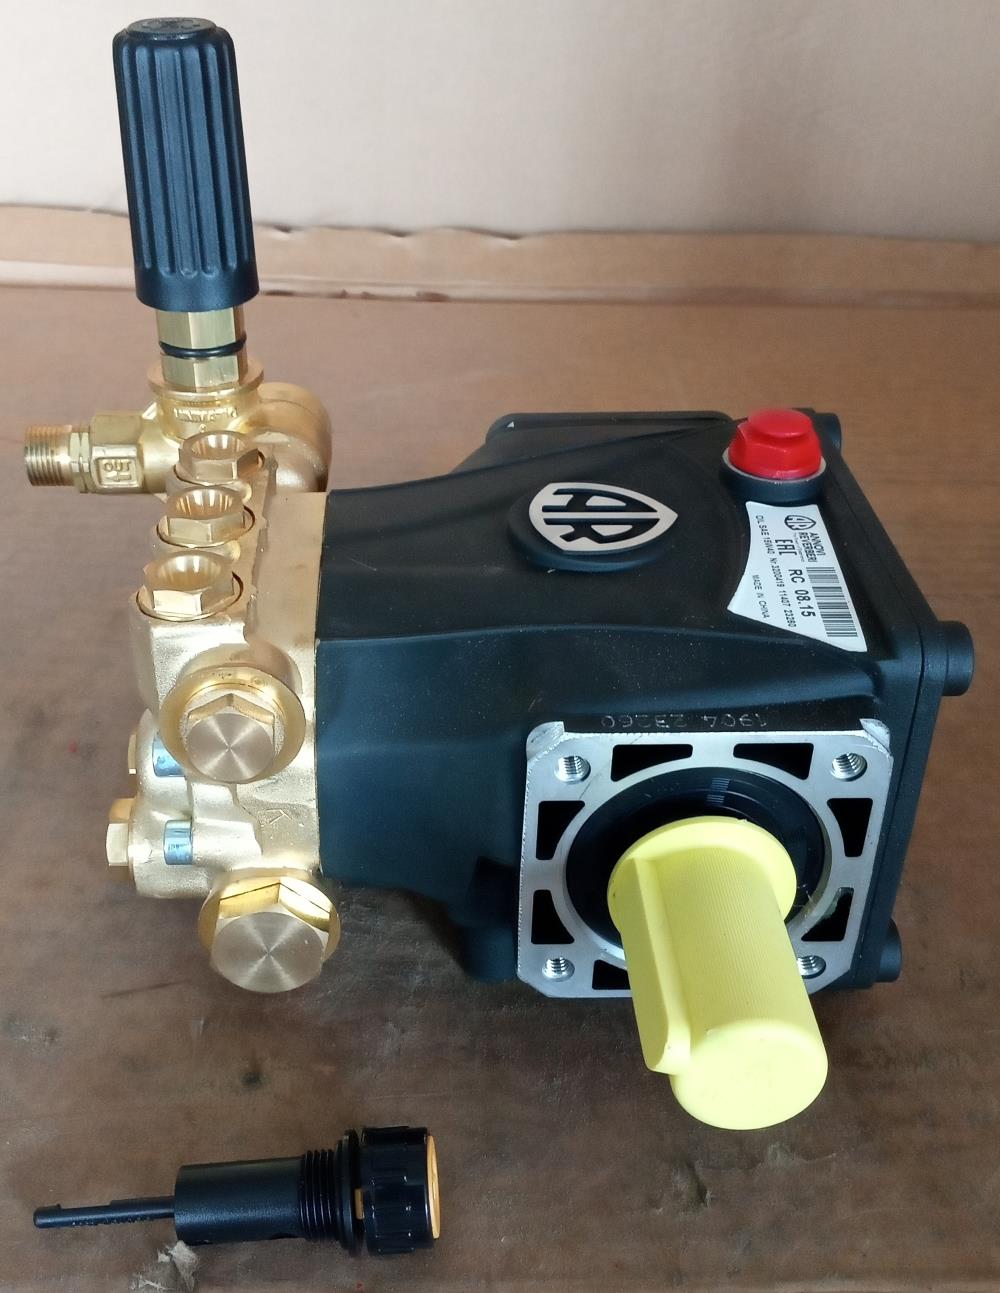 ปั๊มฉีดน้ำแรงดันสูง ยี่ห้อ ANNOVI รุ่น RC Series Pump Type RC 8.15 N-High Pressure Pump,เครื่องฉีดน้ำแรงดันสูง,ANNOVI,ปั๊มฉีดน้ำแรงดันสูง,ปั๊มทำละอองหมอก,High Pressure Pump,cold water high pressure washer,ANNOVI,Machinery and Process Equipment/Machinery/Pressure Washer